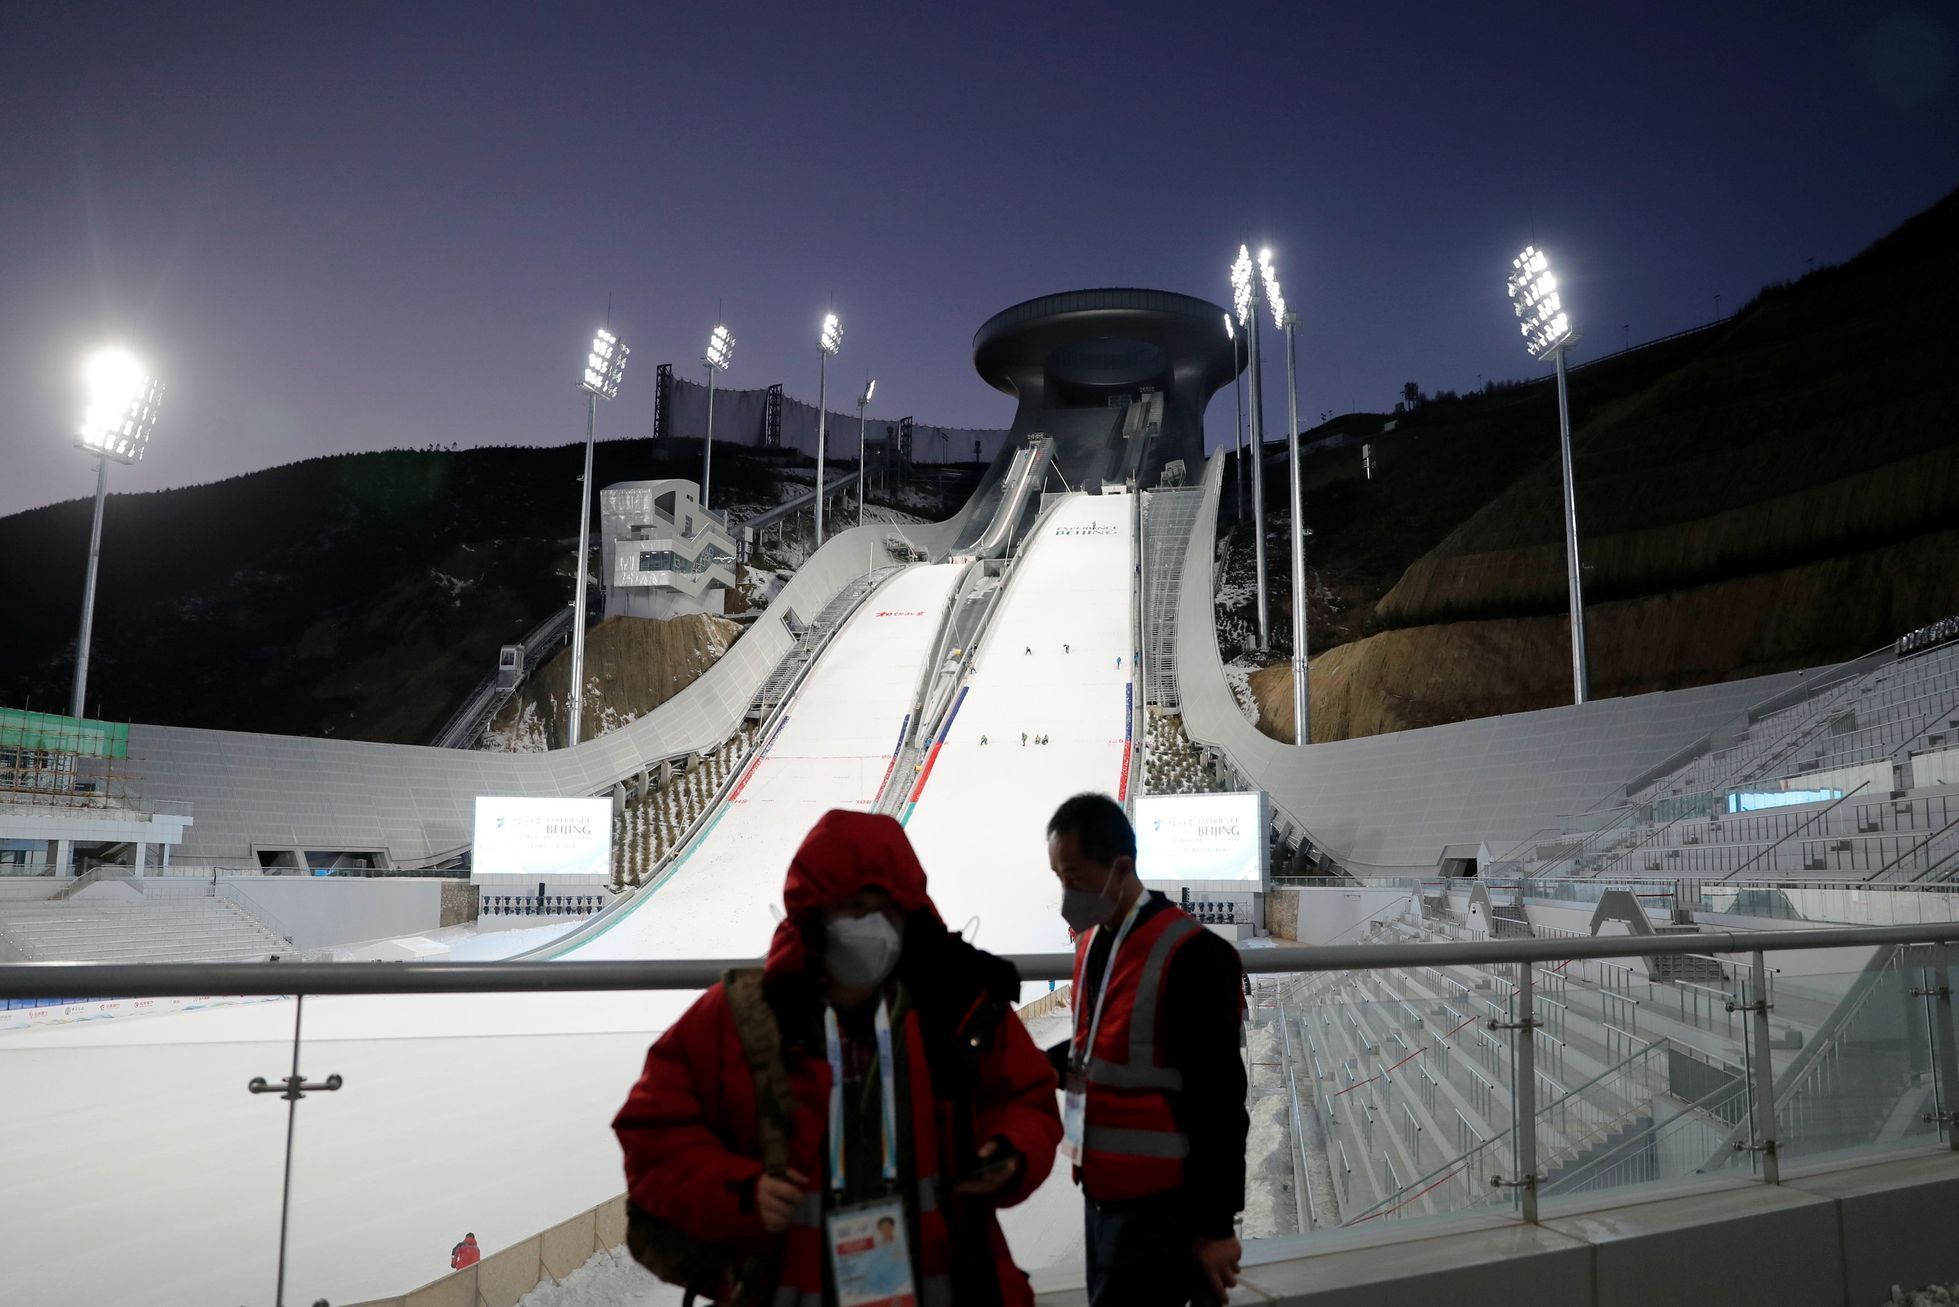 Stadiony pro olympiádu 2022: Kuyangshu (skoky na lyžích)